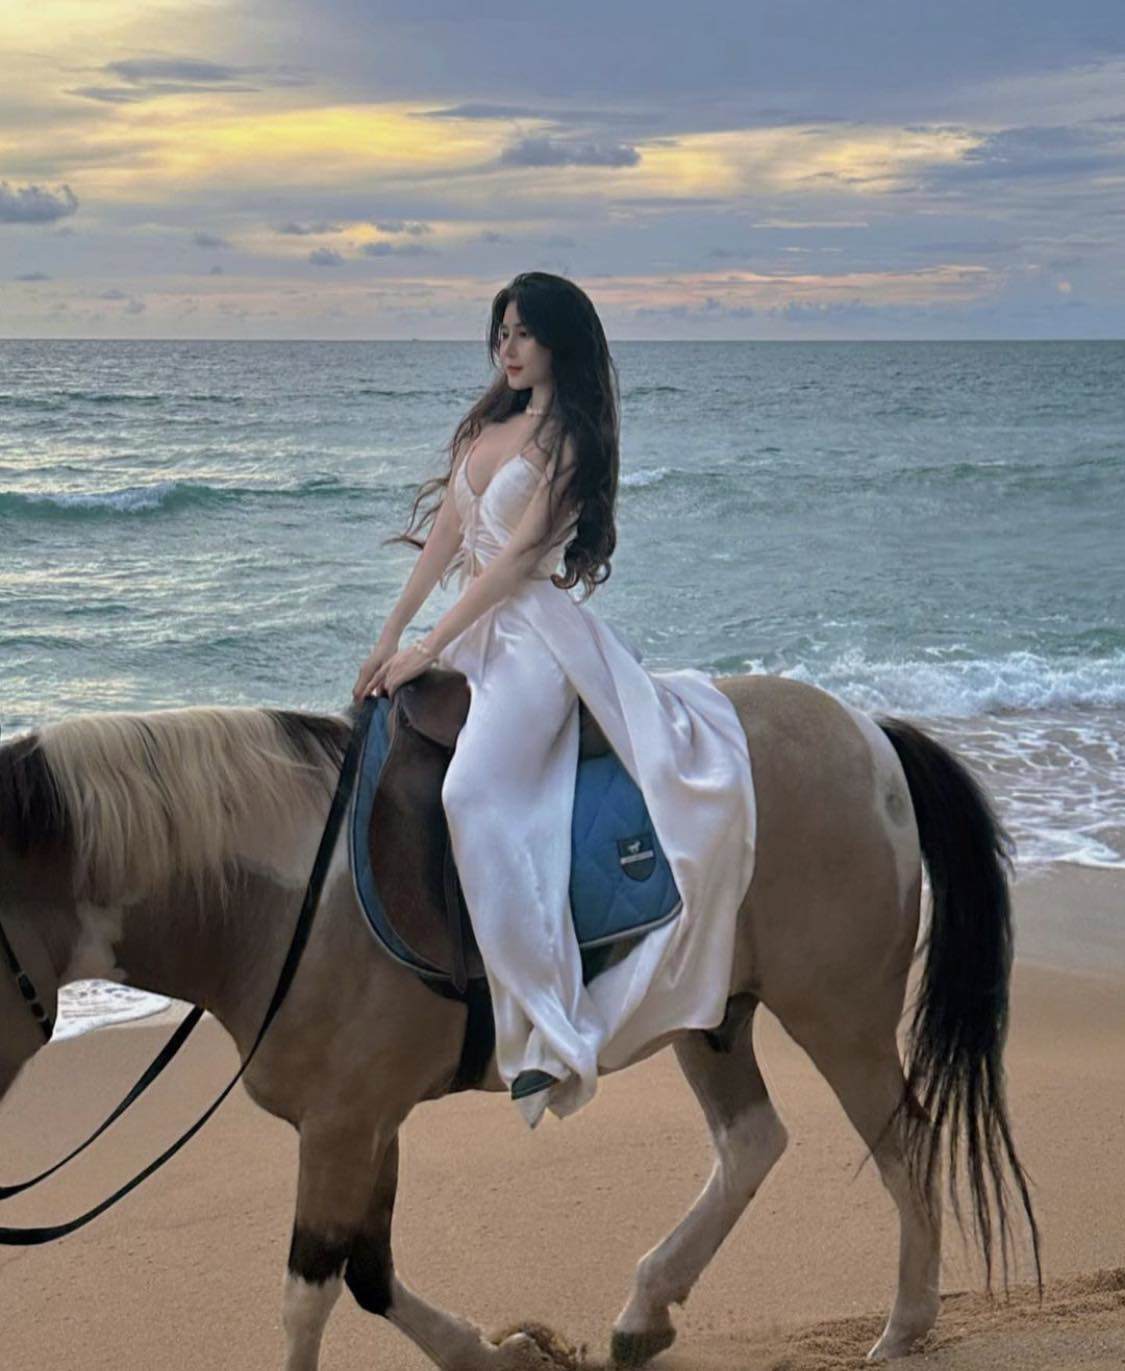 Trend cưỡi ngựa đi dạo biển: 